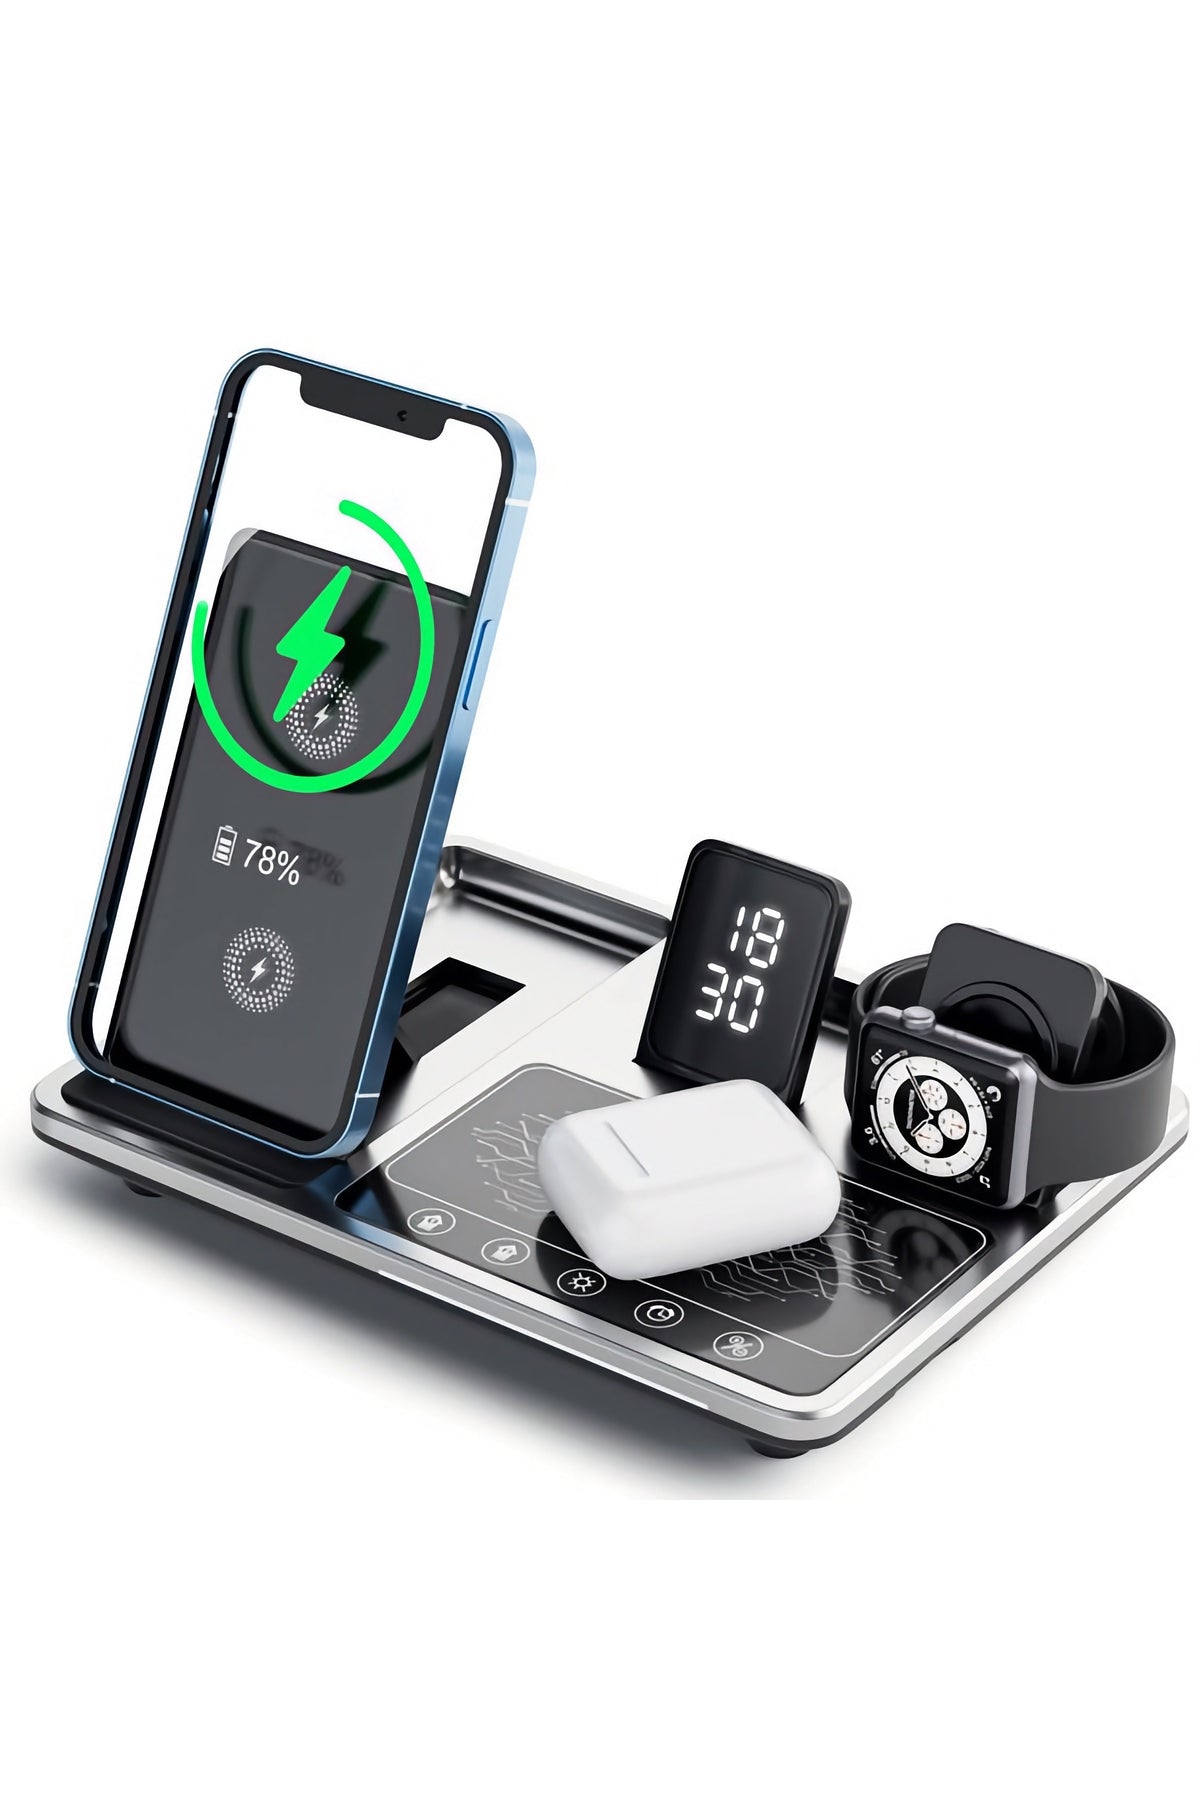 Green Lion Apple Watch iPhone Airpods Uyumlu Wireless Şarj Standı 3in1